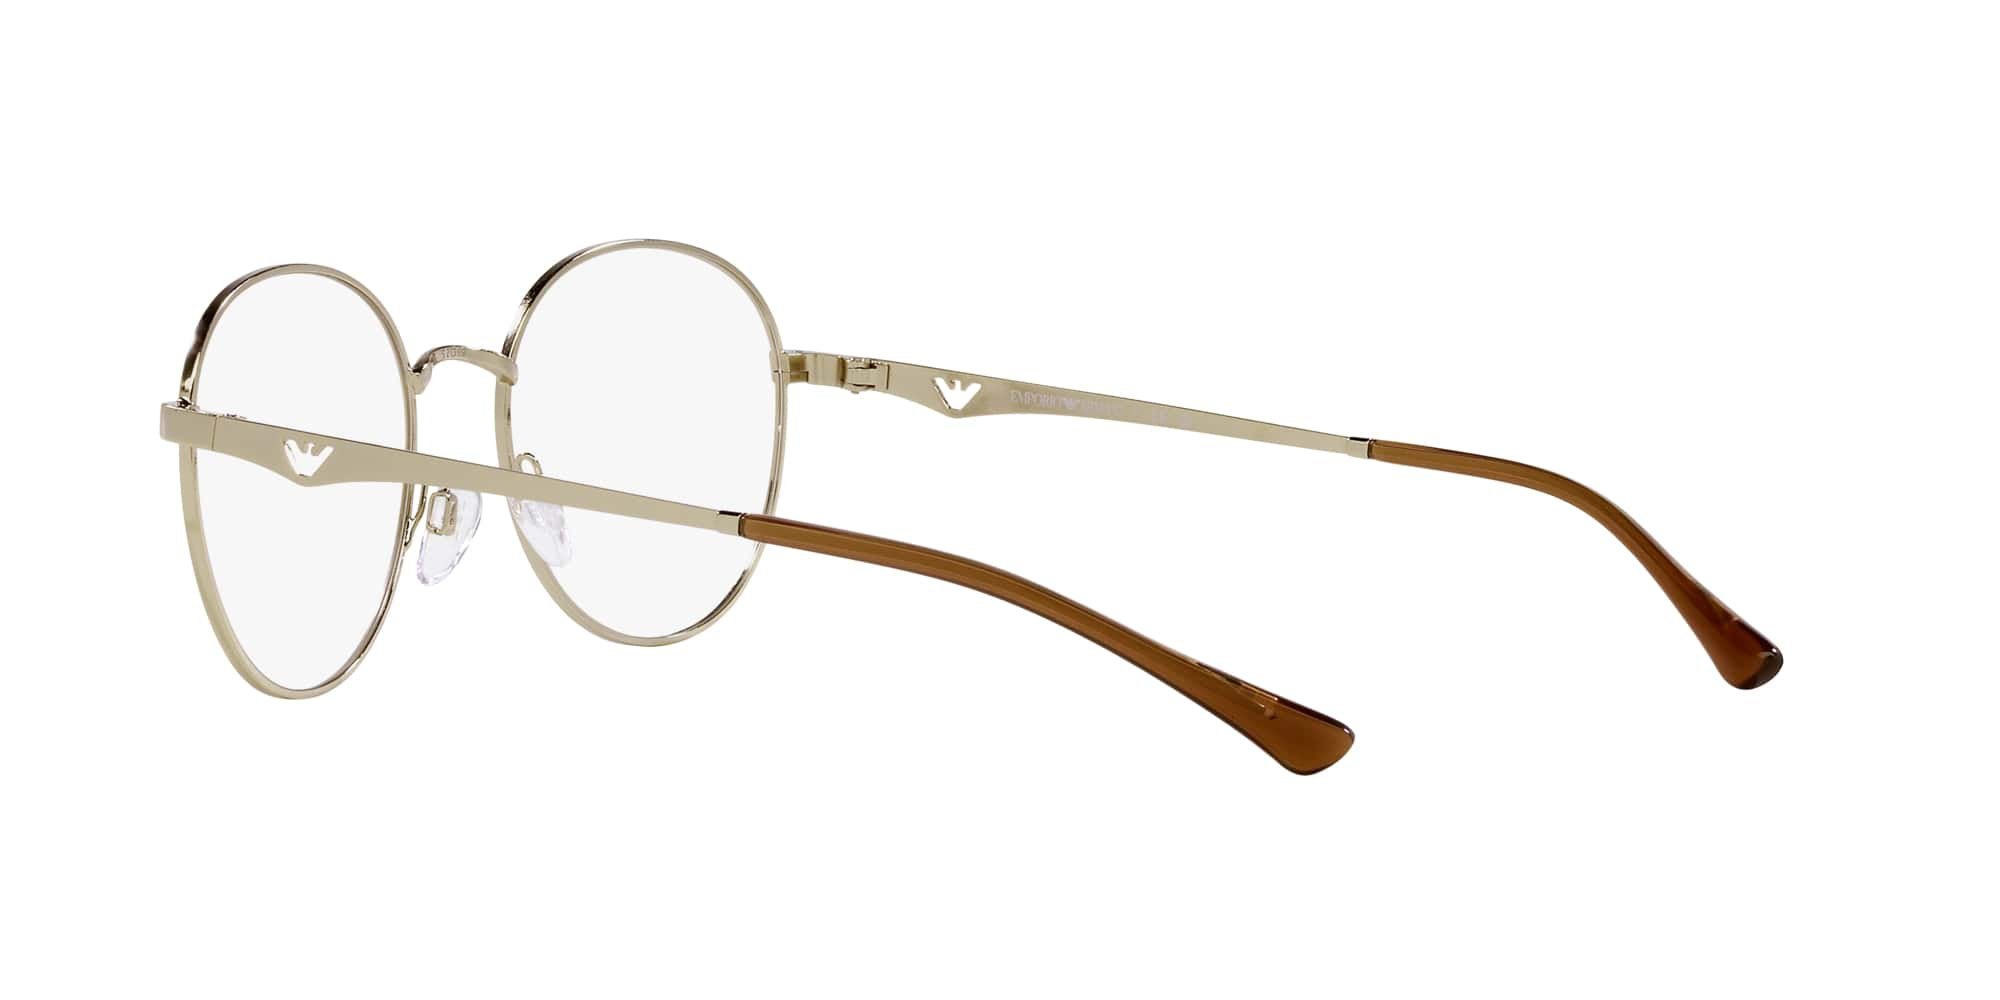 Das Bild zeigt die Korrektionsbrille EA1144 3013 von der Marke Emporio Armani in Hellgold.